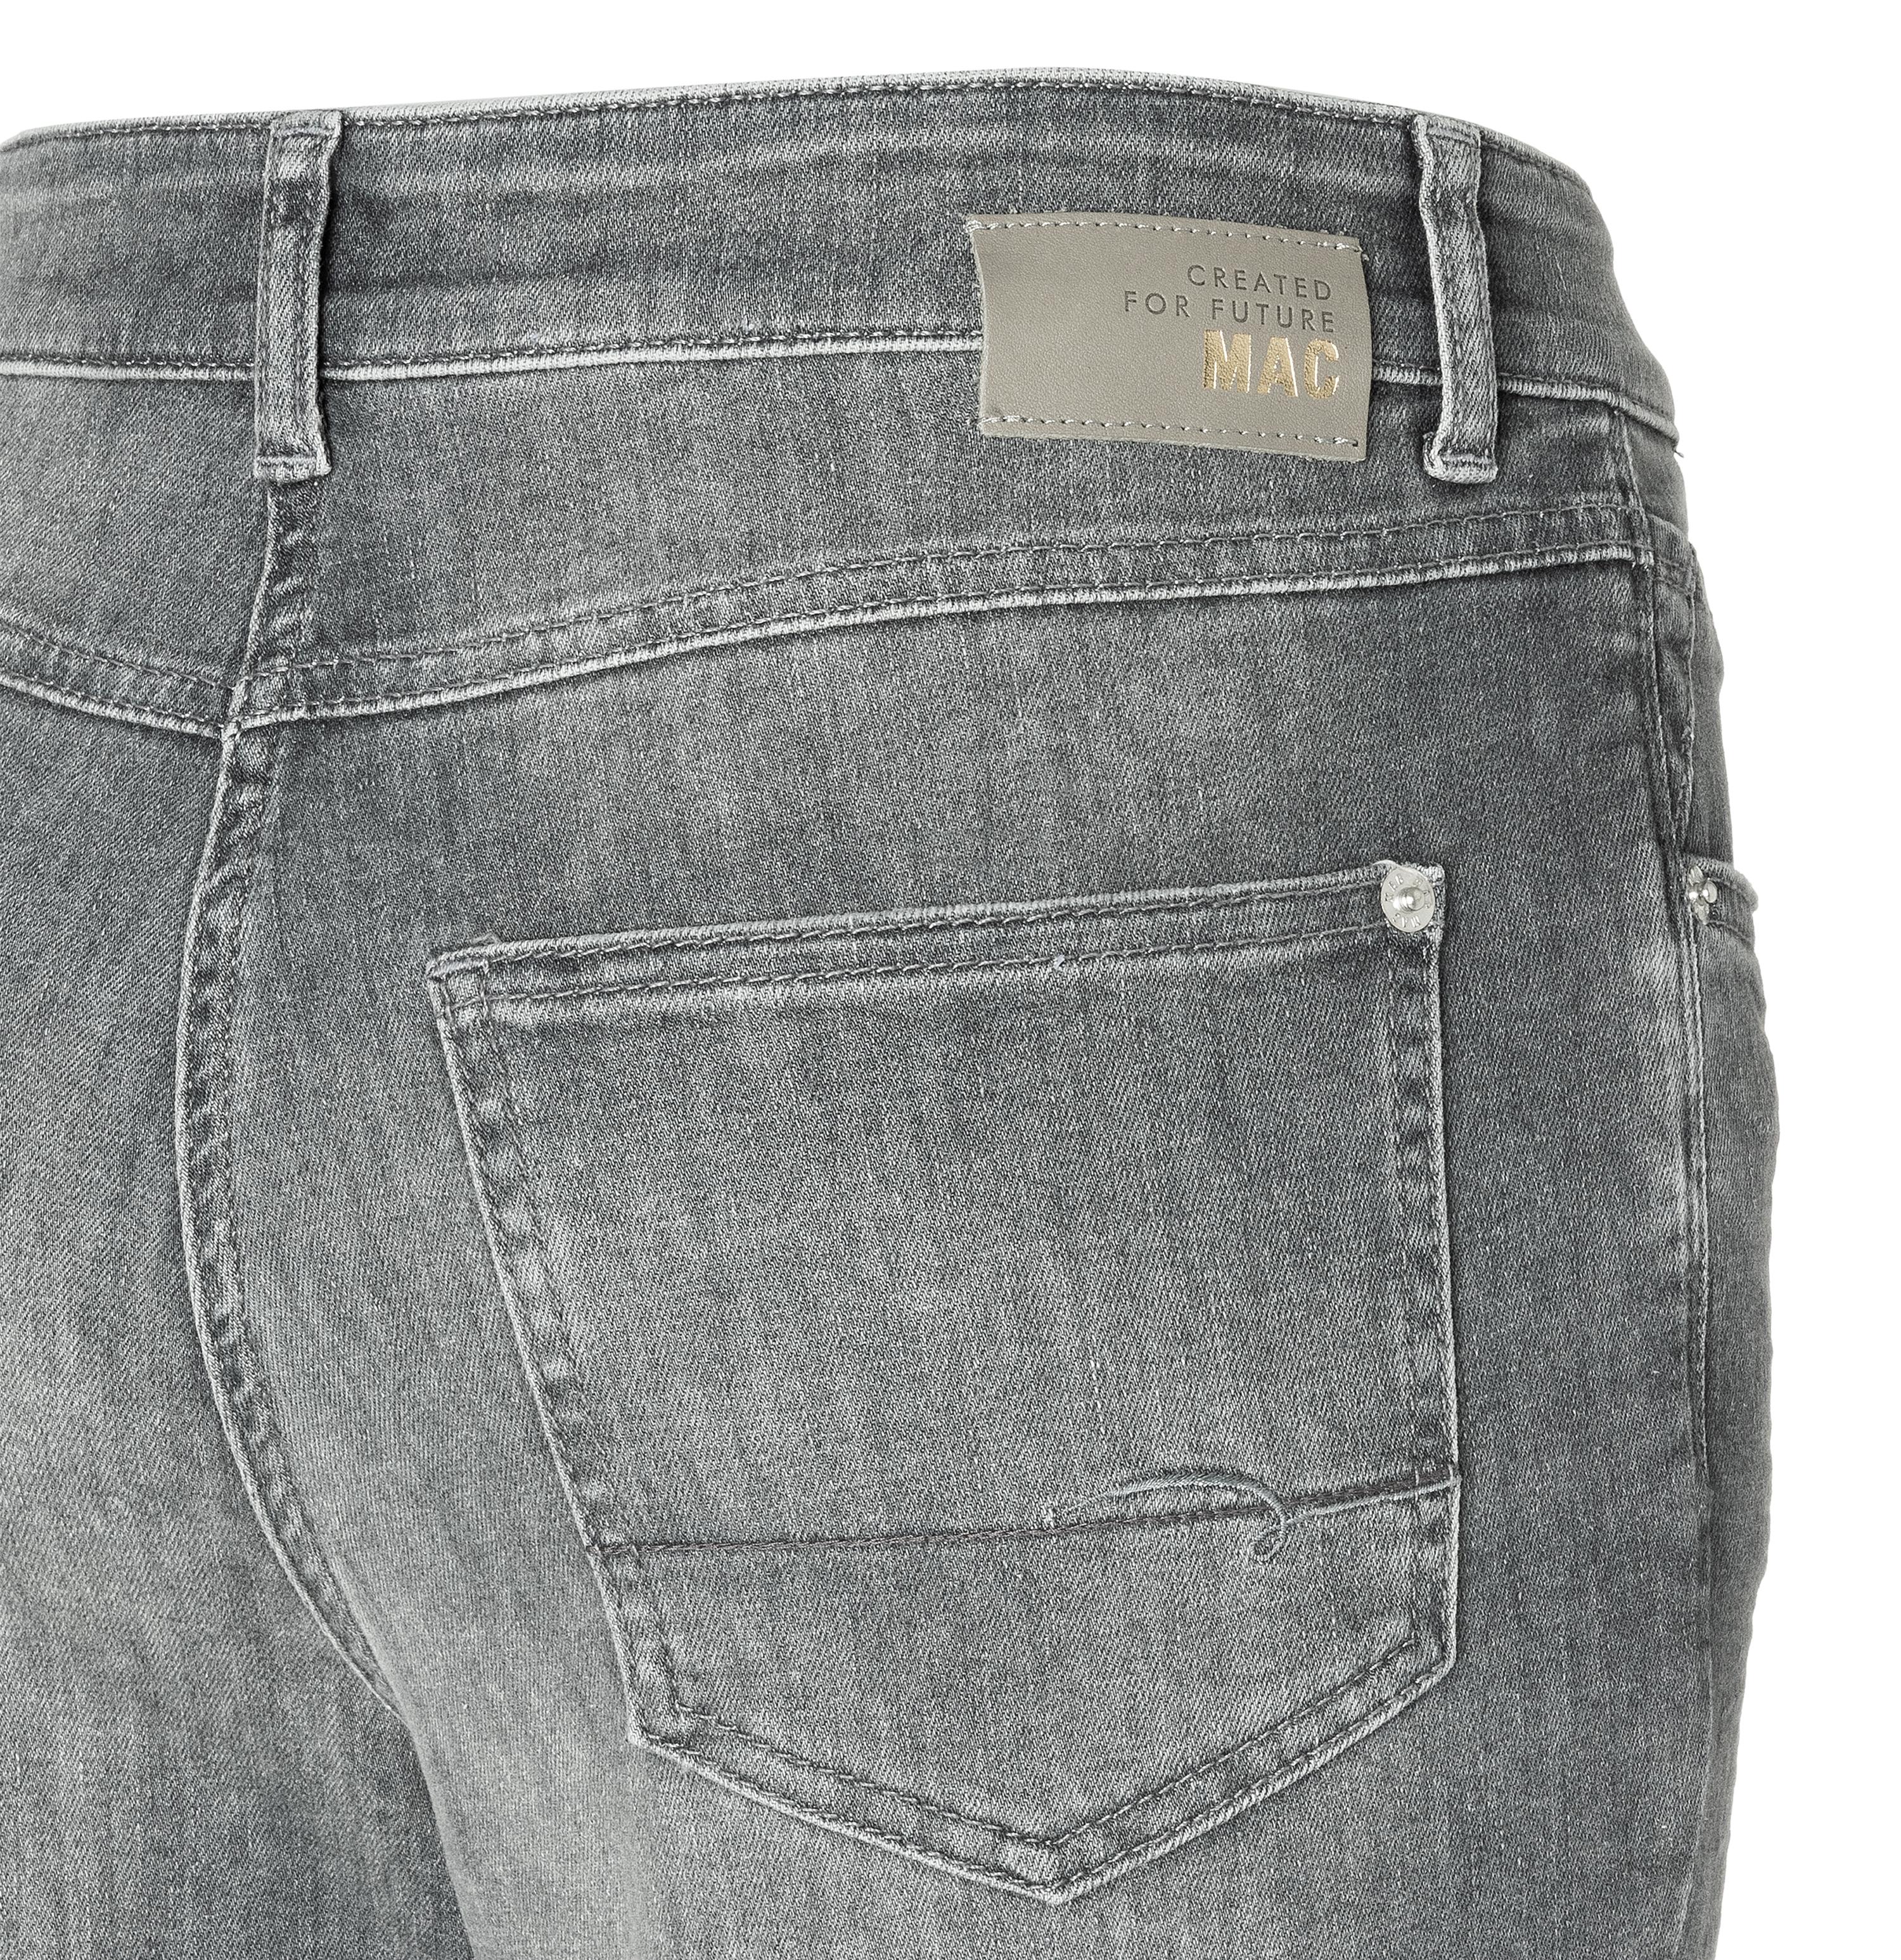 D339 | | | DENIM Jeans | MAC 5040-87-0389 MAC wash grey Jeans MAC | Damen summer Jeans-Manufaktur MELANIE Melanie